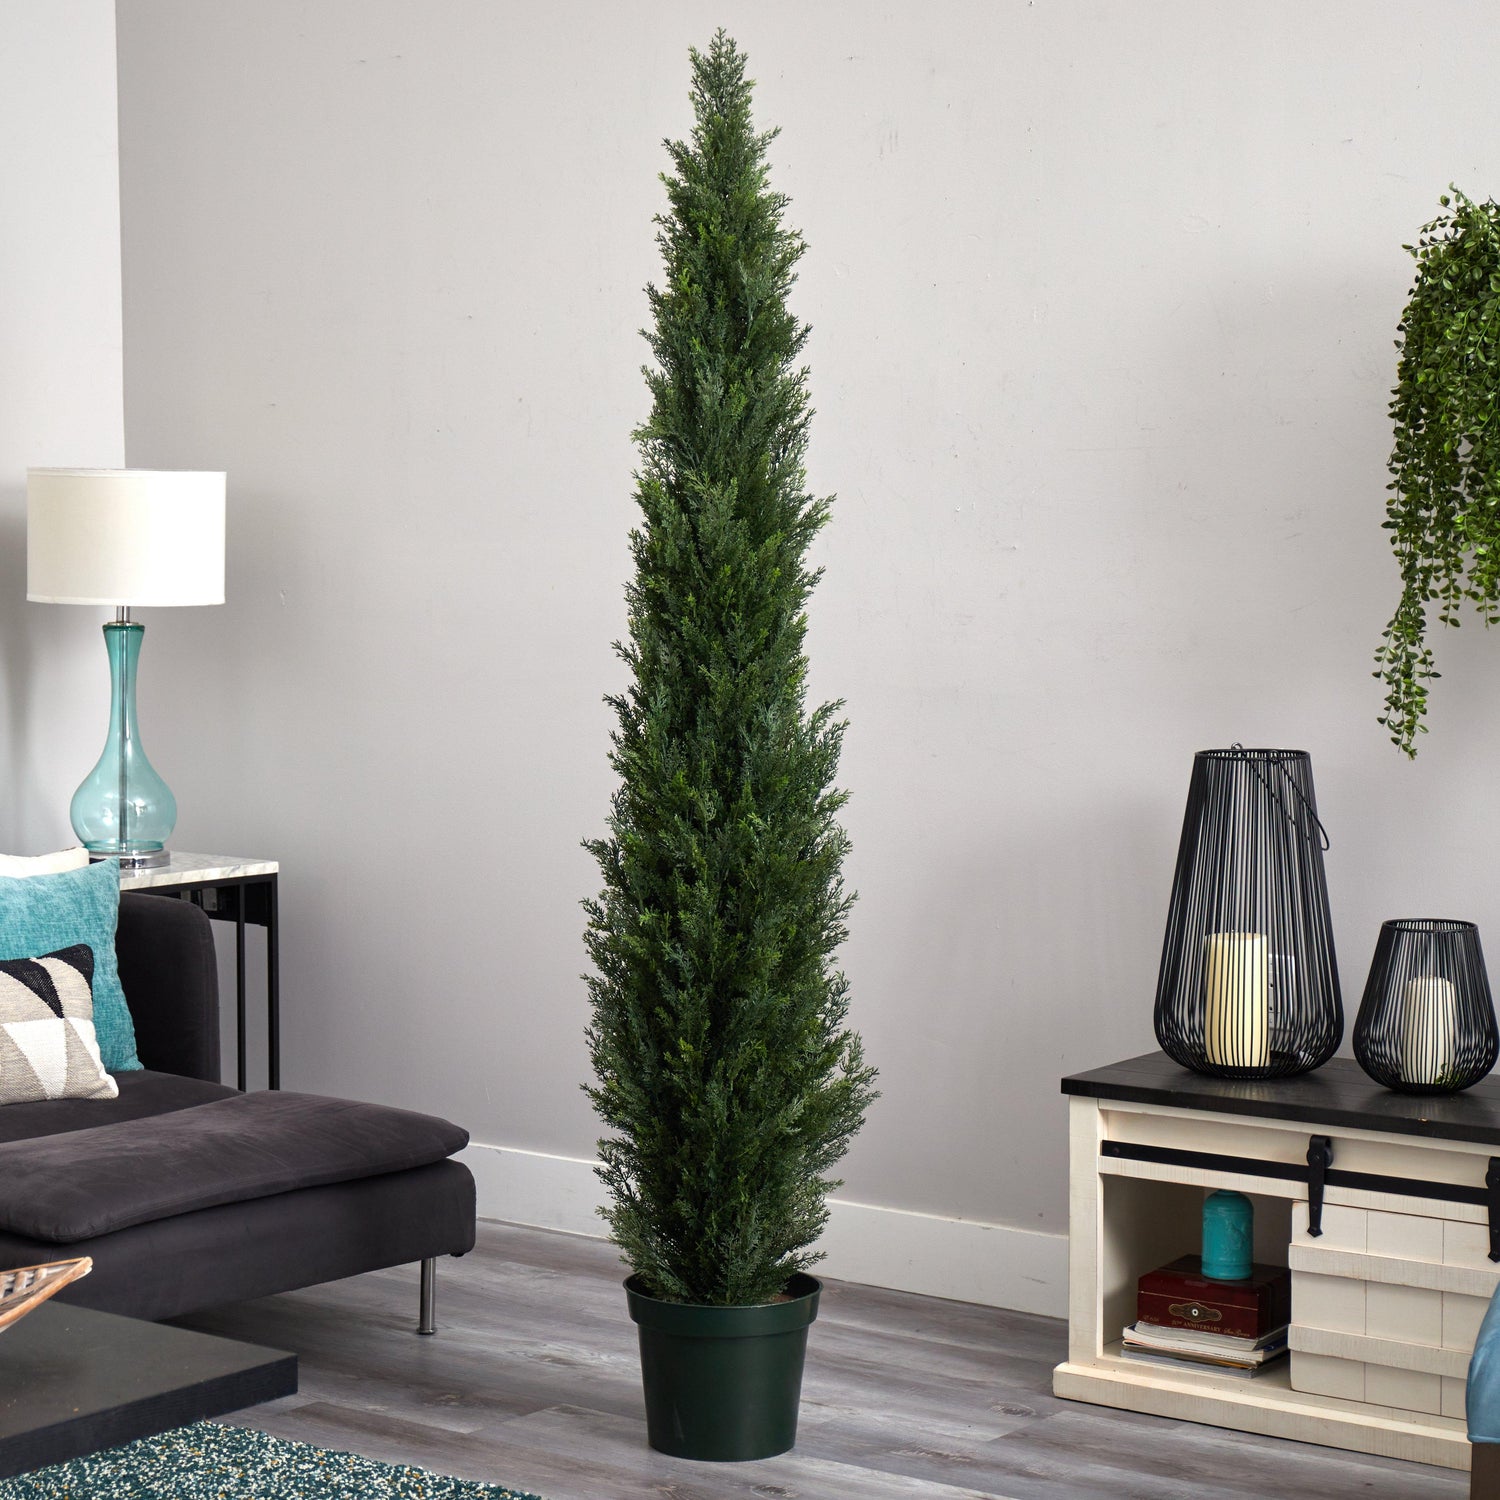 7' Mini Cedar Pine Tree w/3614 Tips in 12” Pot (Two Tone Green)